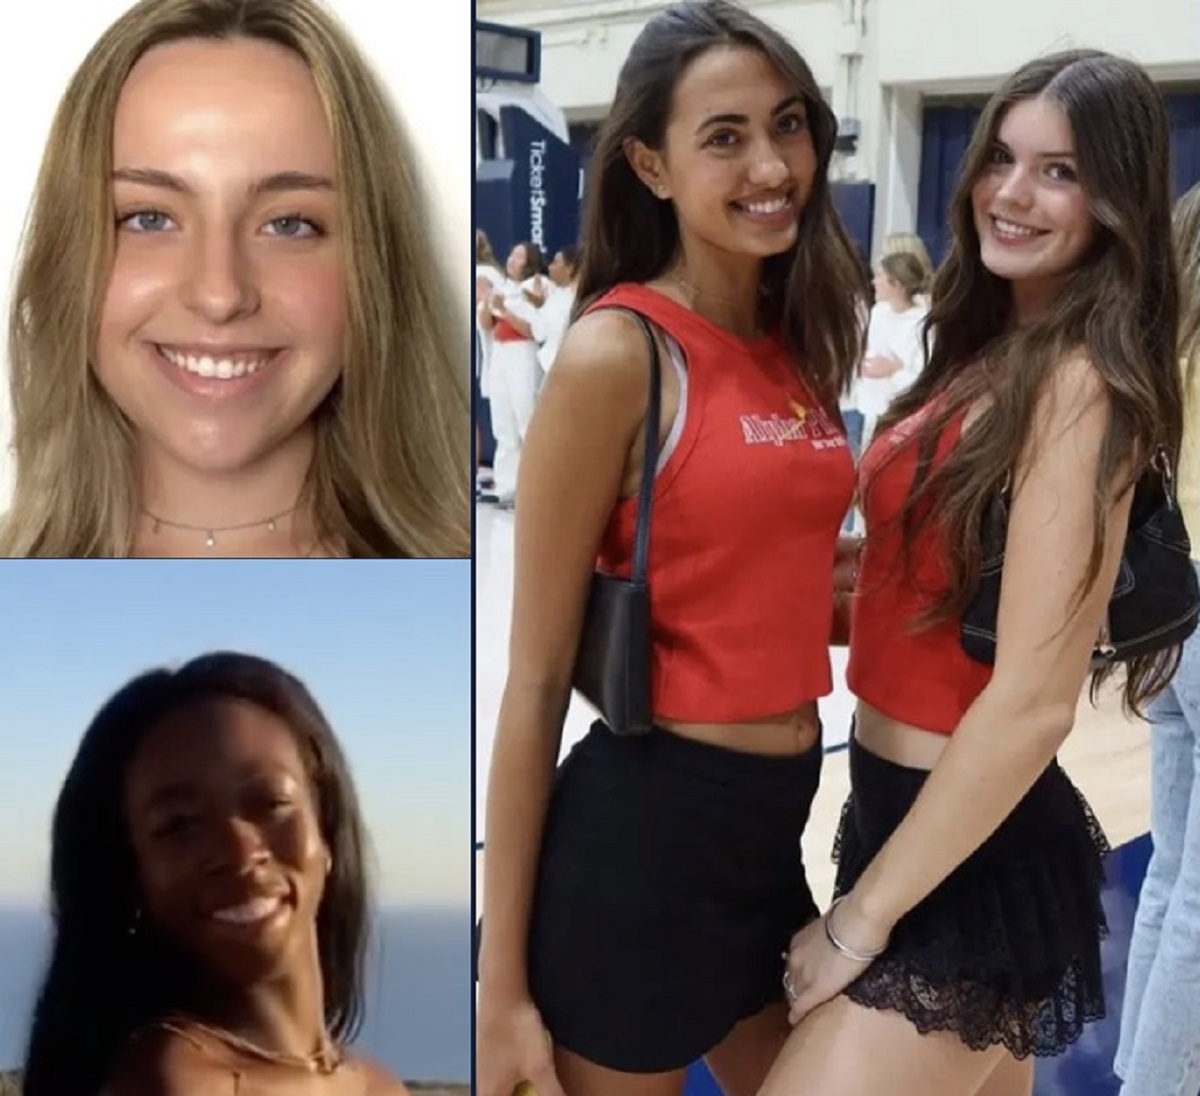 California travolte da un’auto morte quattro ragazze